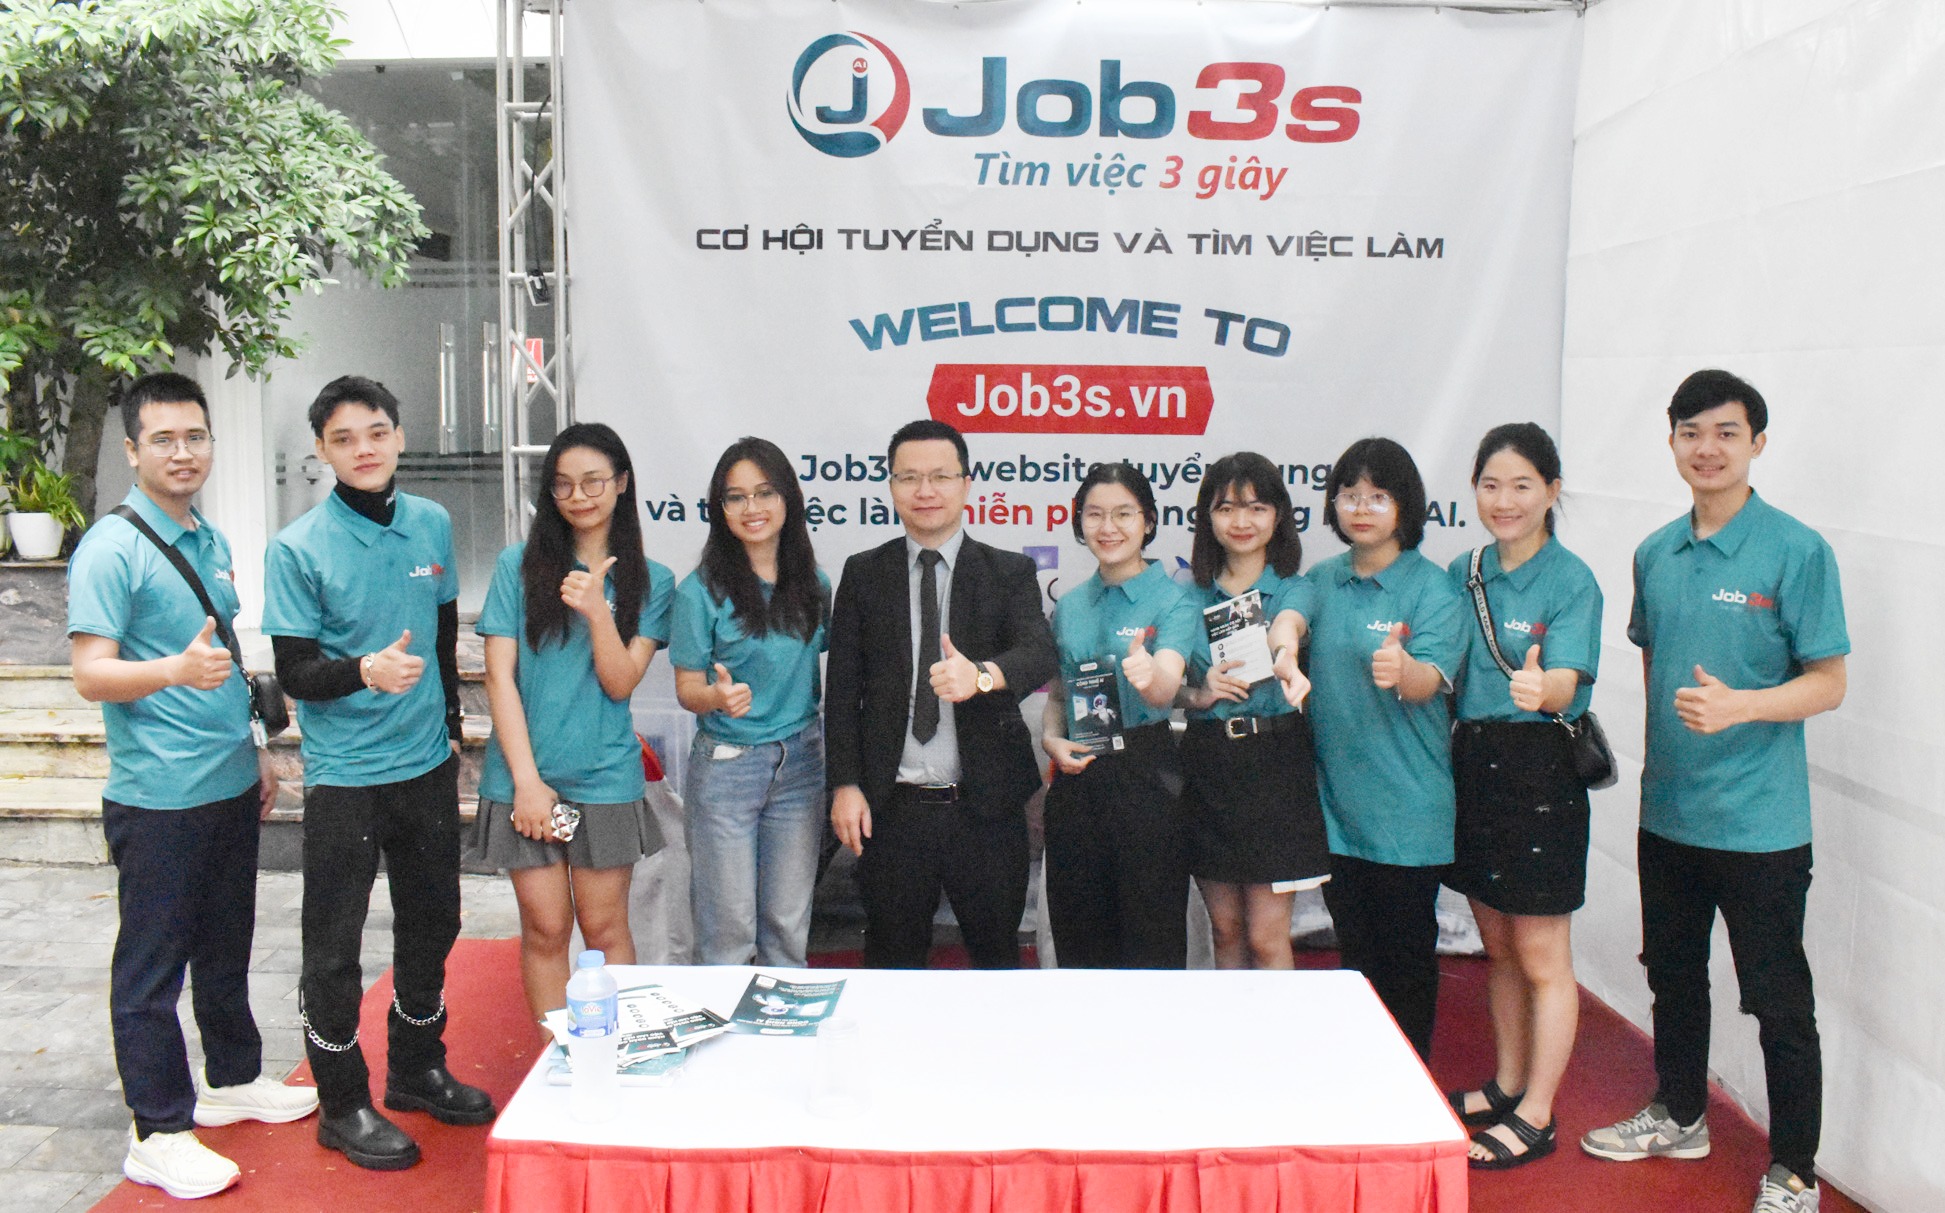 Job3s.vn là một trong những nền tảng tuyển dụng được nhiều người tin dùng